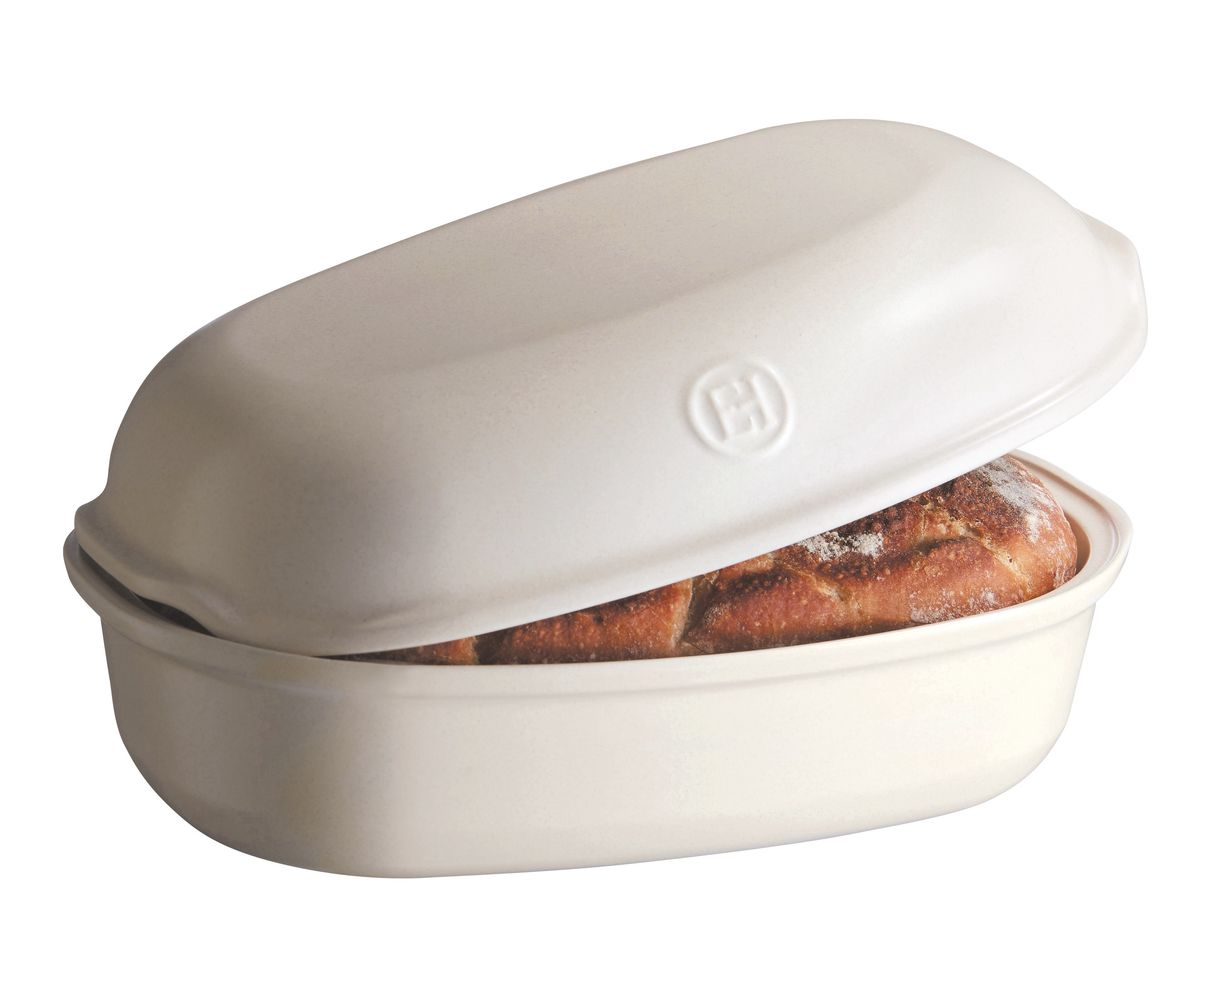 Bread Loaf Baker, Emile Henry USA